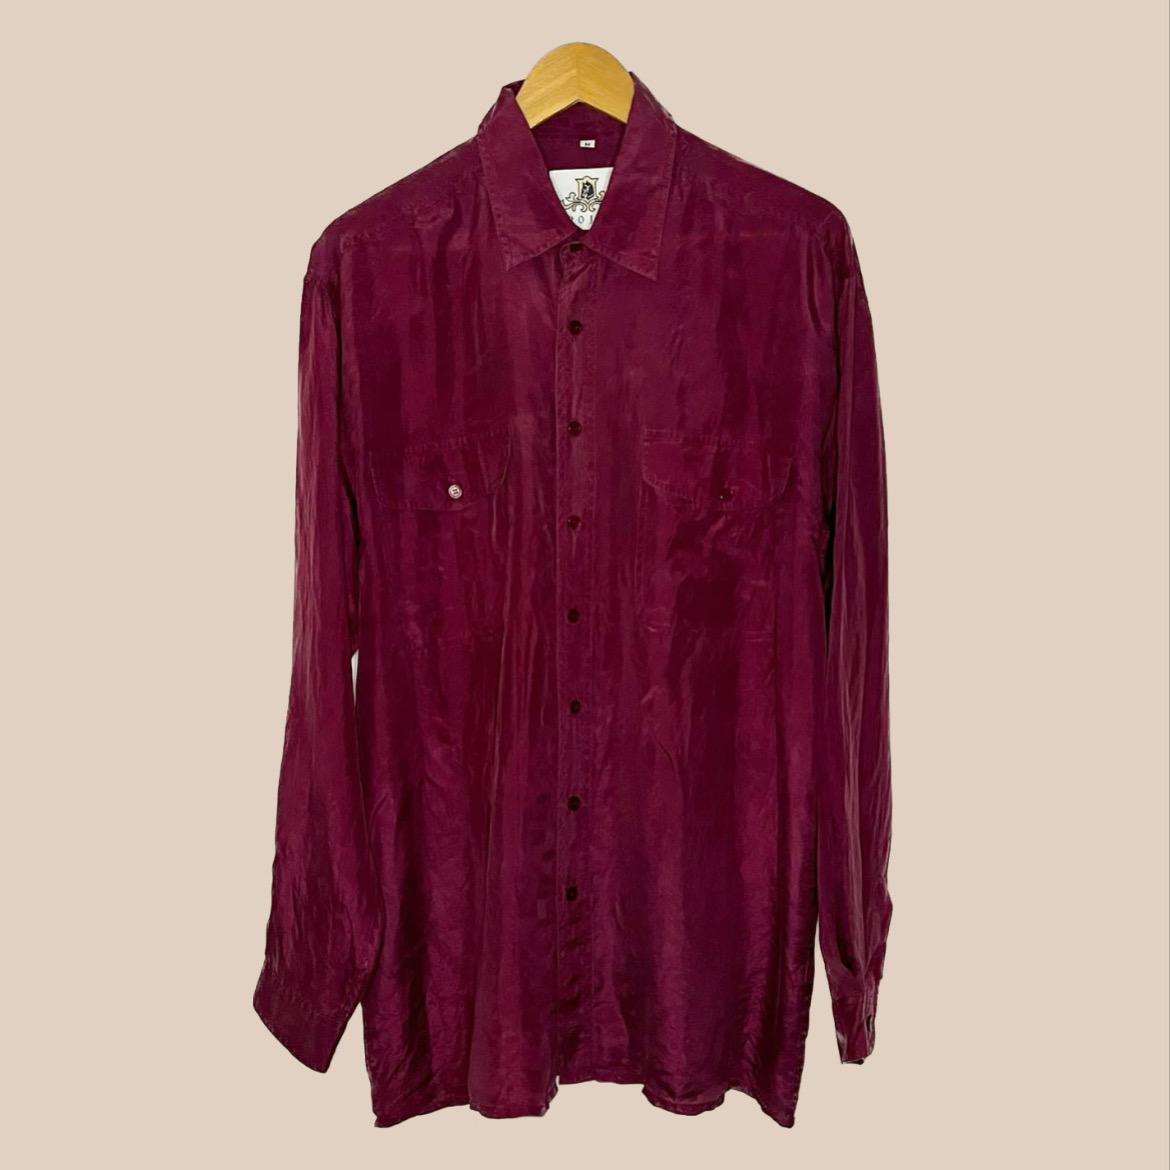 Burgundy vintage shirt